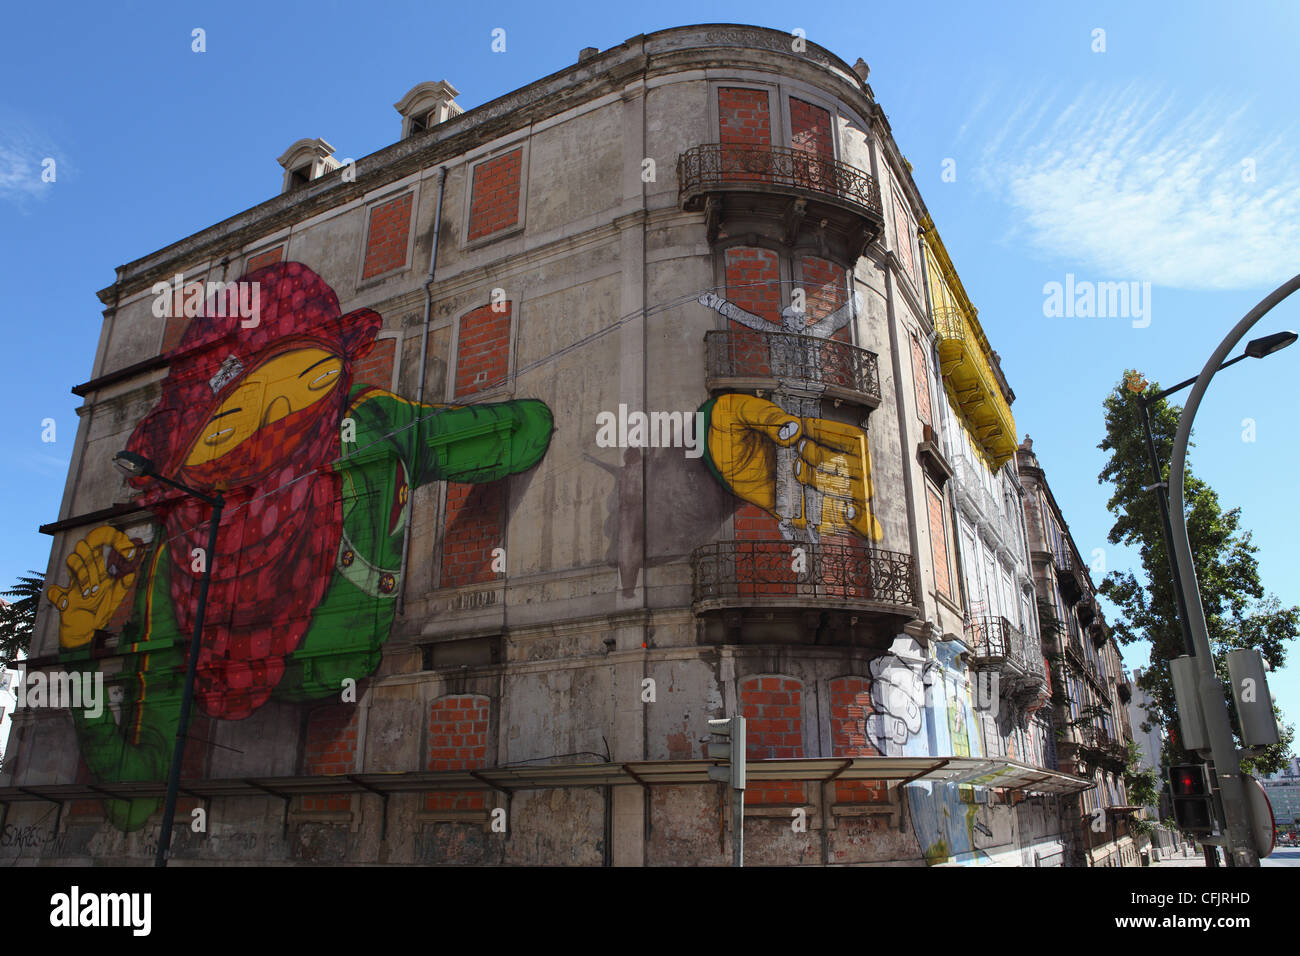 Gemeo's facade at the Avenida Fontes Pereira de Melo 24, part of the Crono urban art project, Lisbon, Portugal, Europe Stock Photo